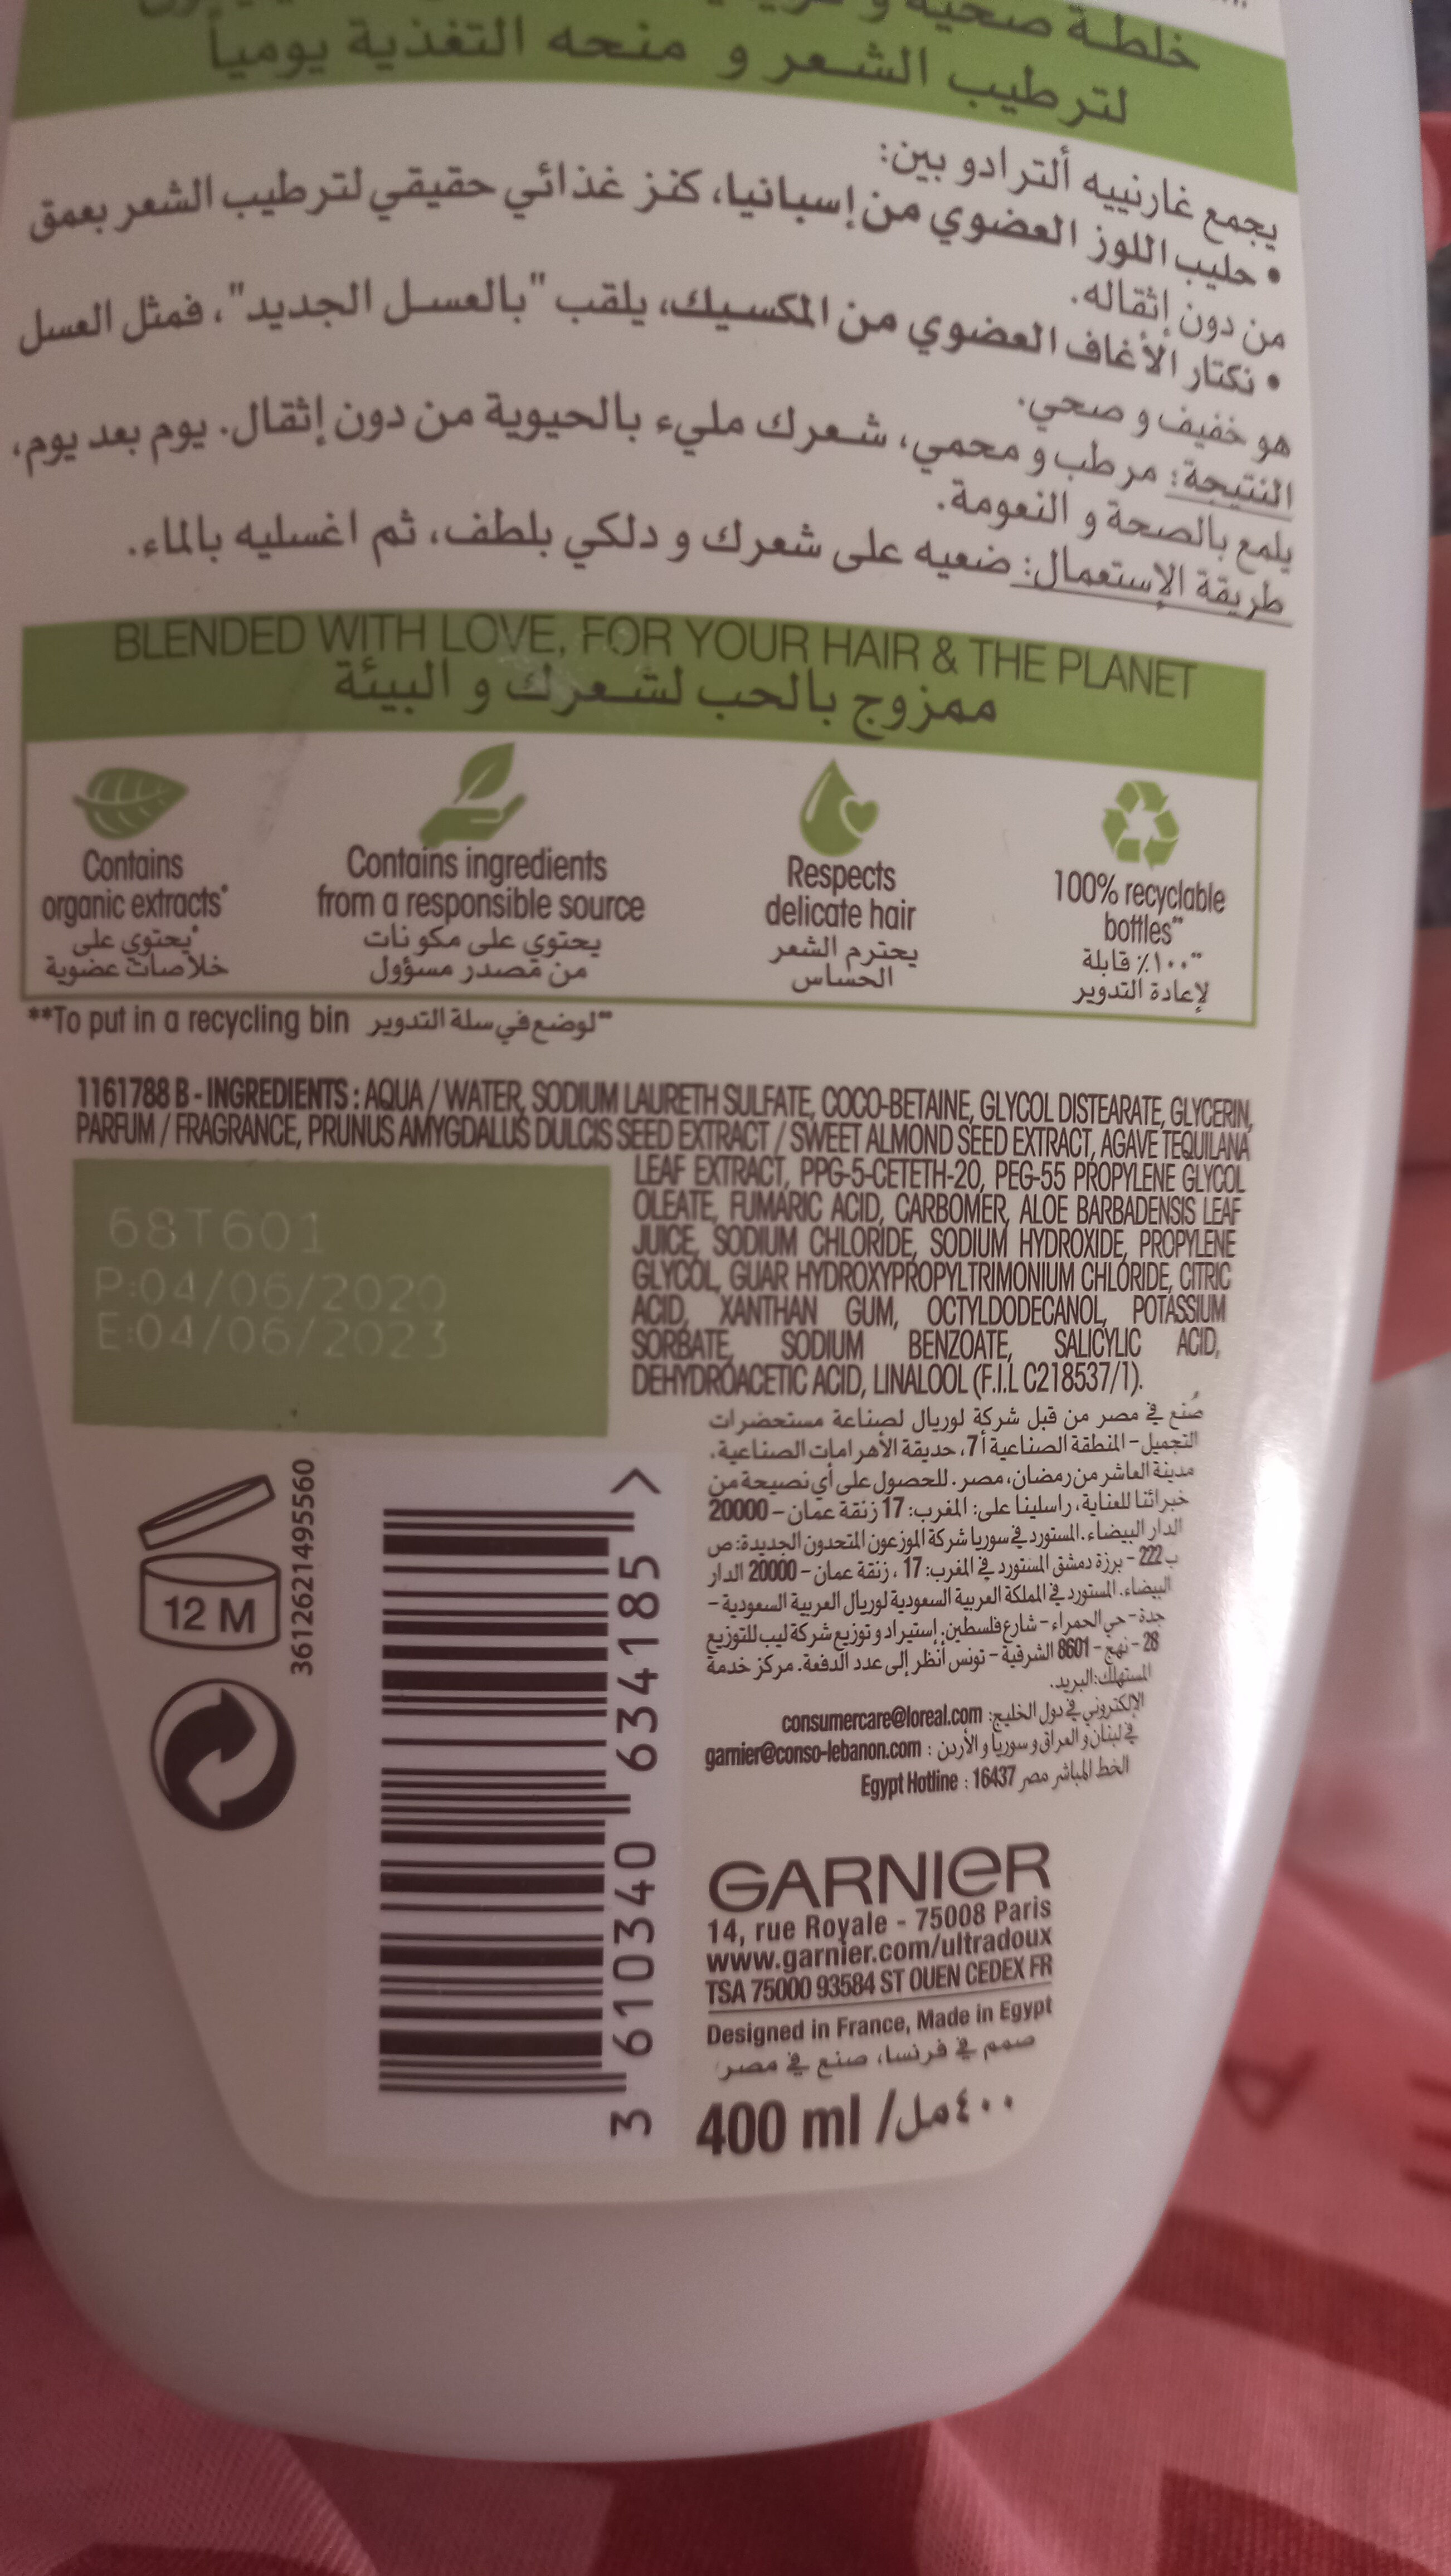 ultra doux shampoo - Ingredients - en